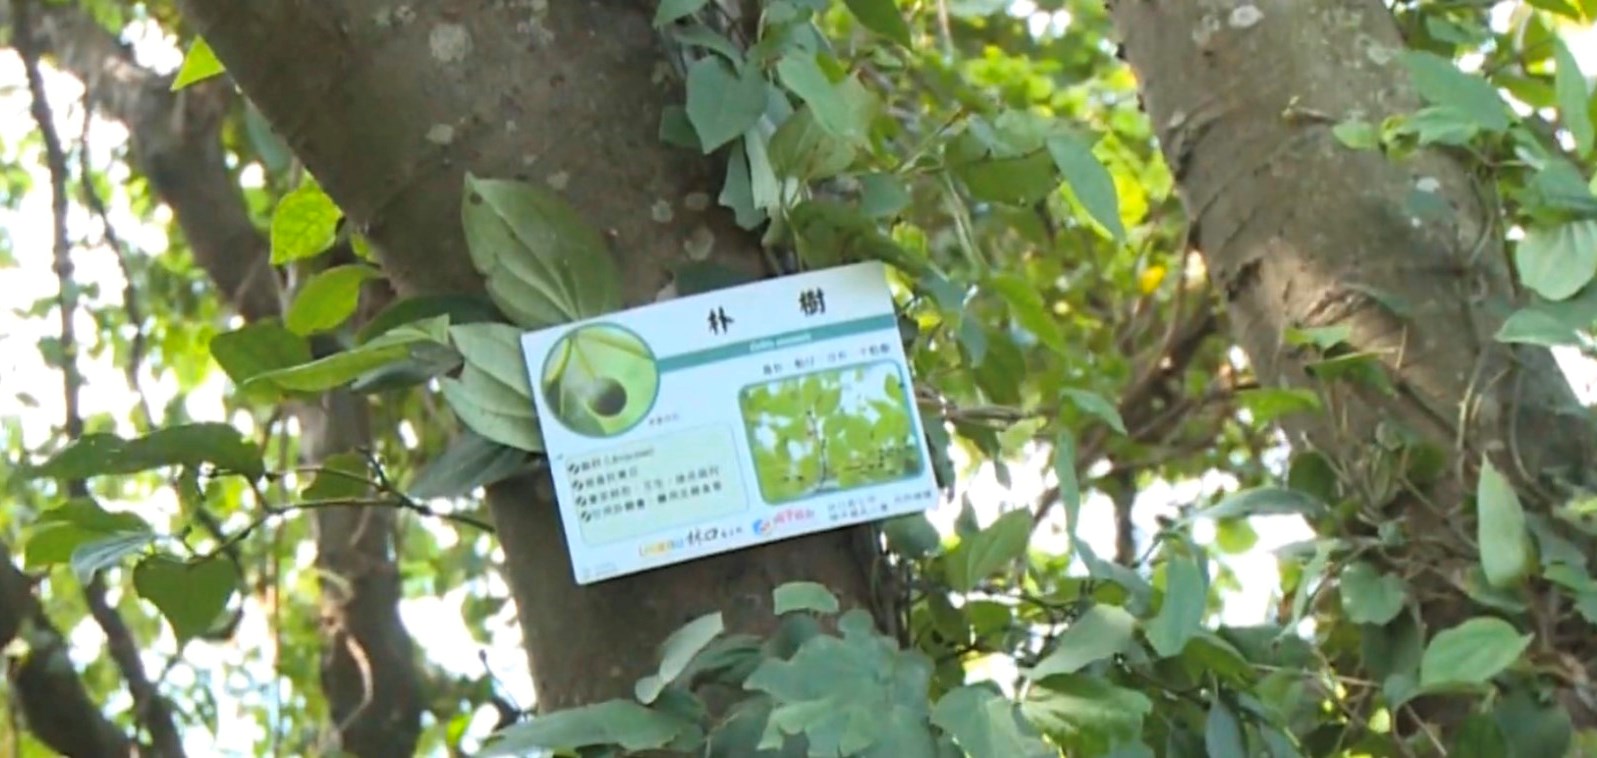 太平濱海步道-植物解說牌